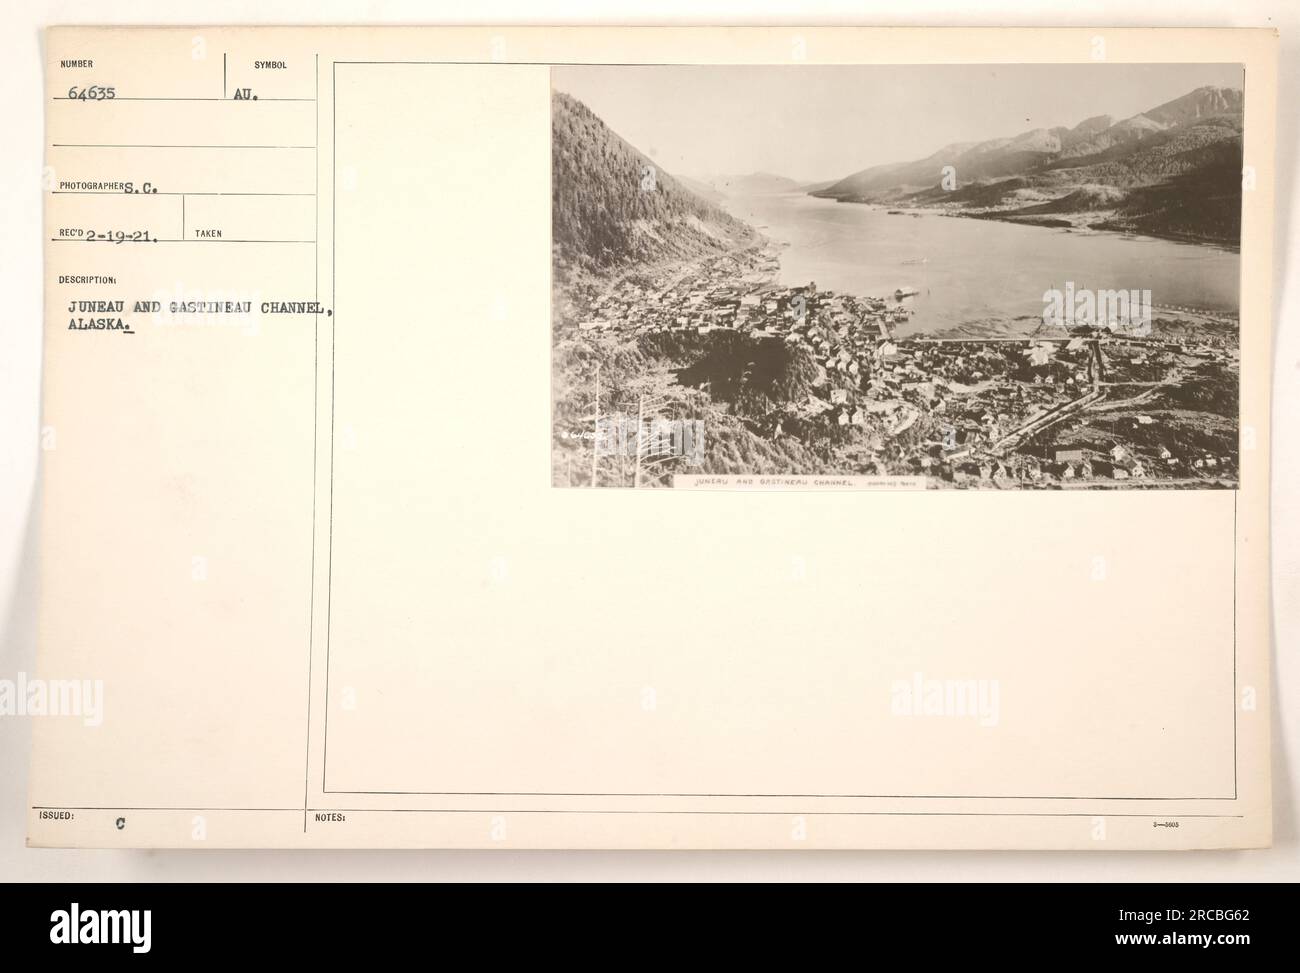 Una foto scattata a Juneau, Alaska, che mostra la vista panoramica del canale di Gastineau. L'immagine è stata catturata dal fotografo C. ECD2-19-21 durante la prima guerra mondiale. Non sono disponibili ulteriori informazioni o note relative al simbolo o alla descrizione della fotografia. Foto Stock